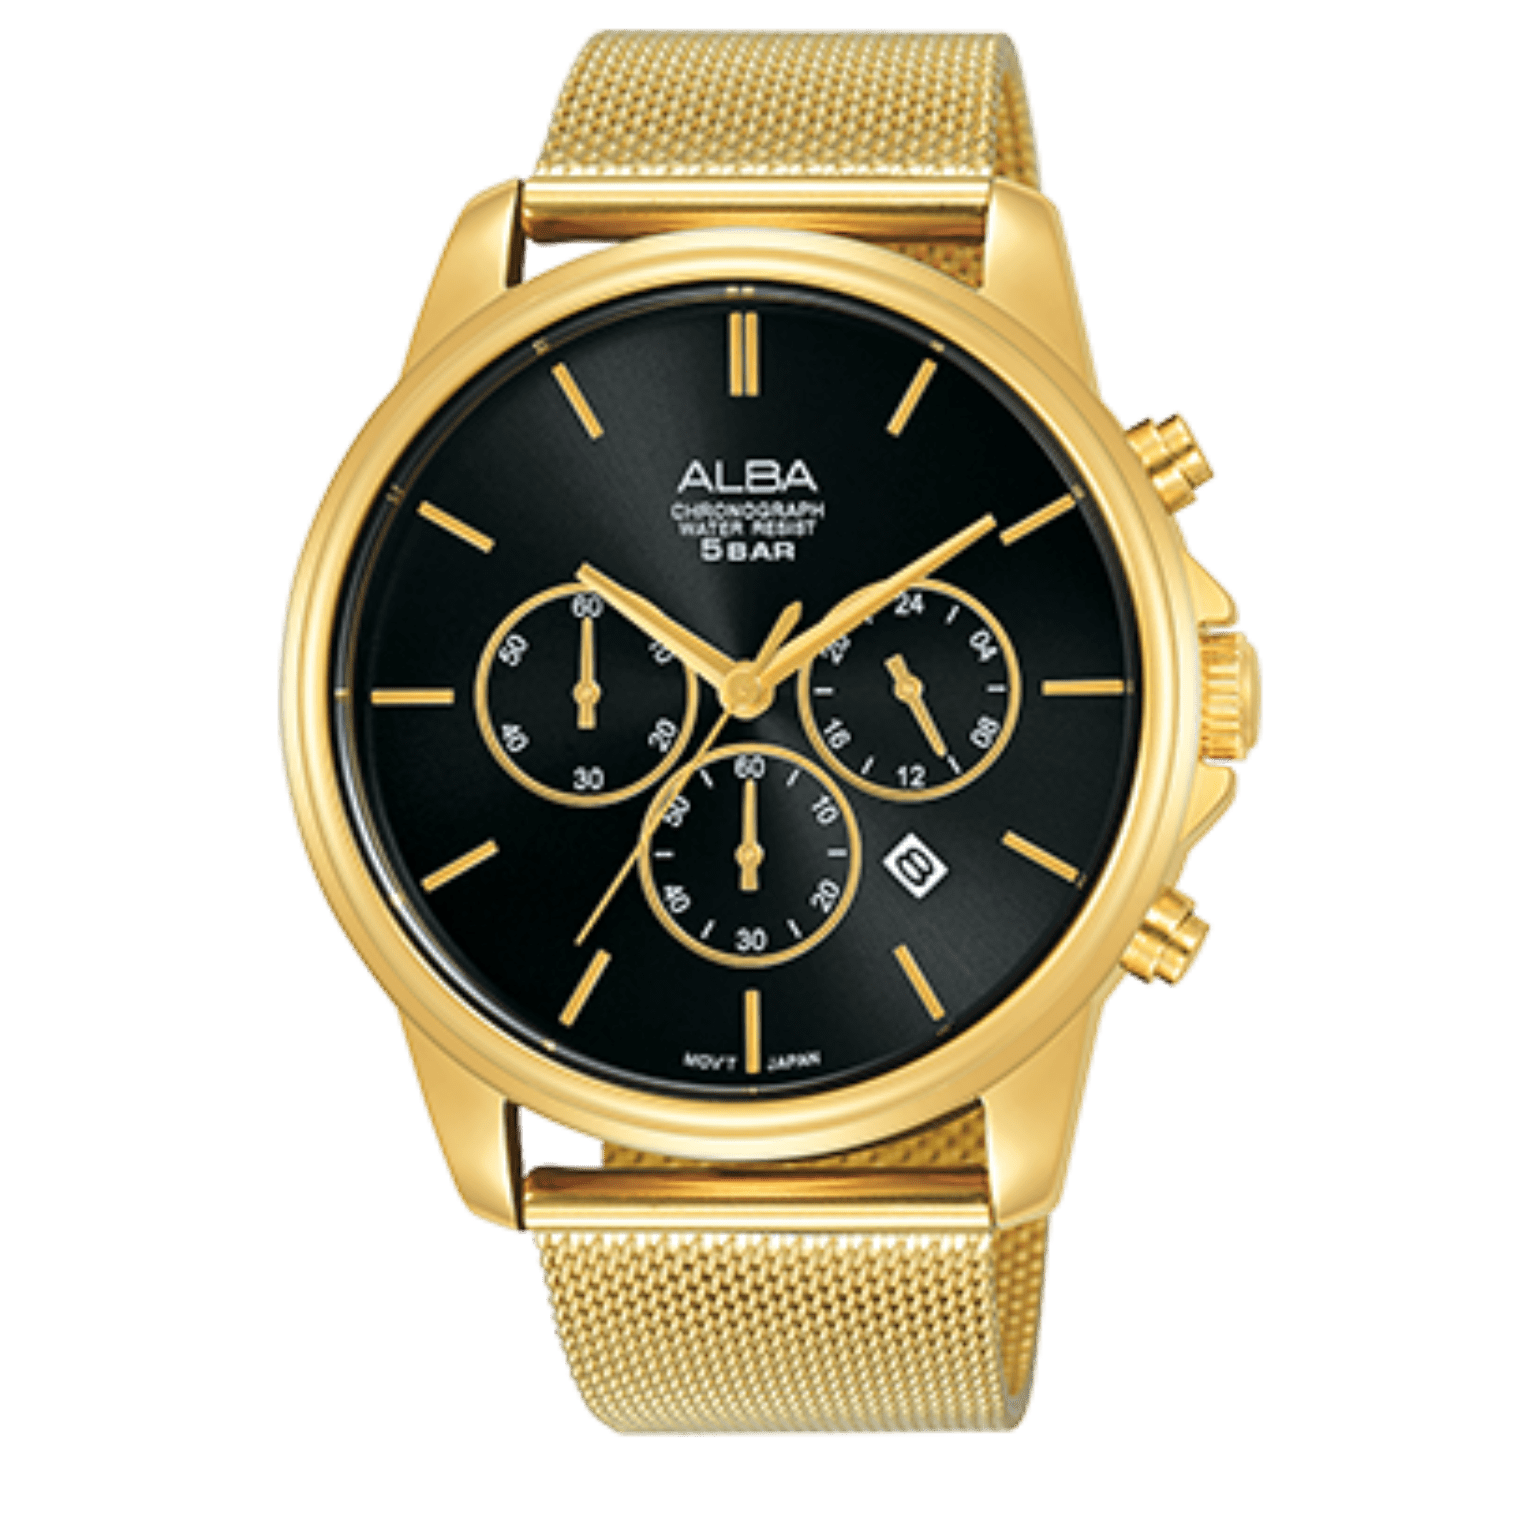 Men's Prestige Watch AT3E42X1 Alba